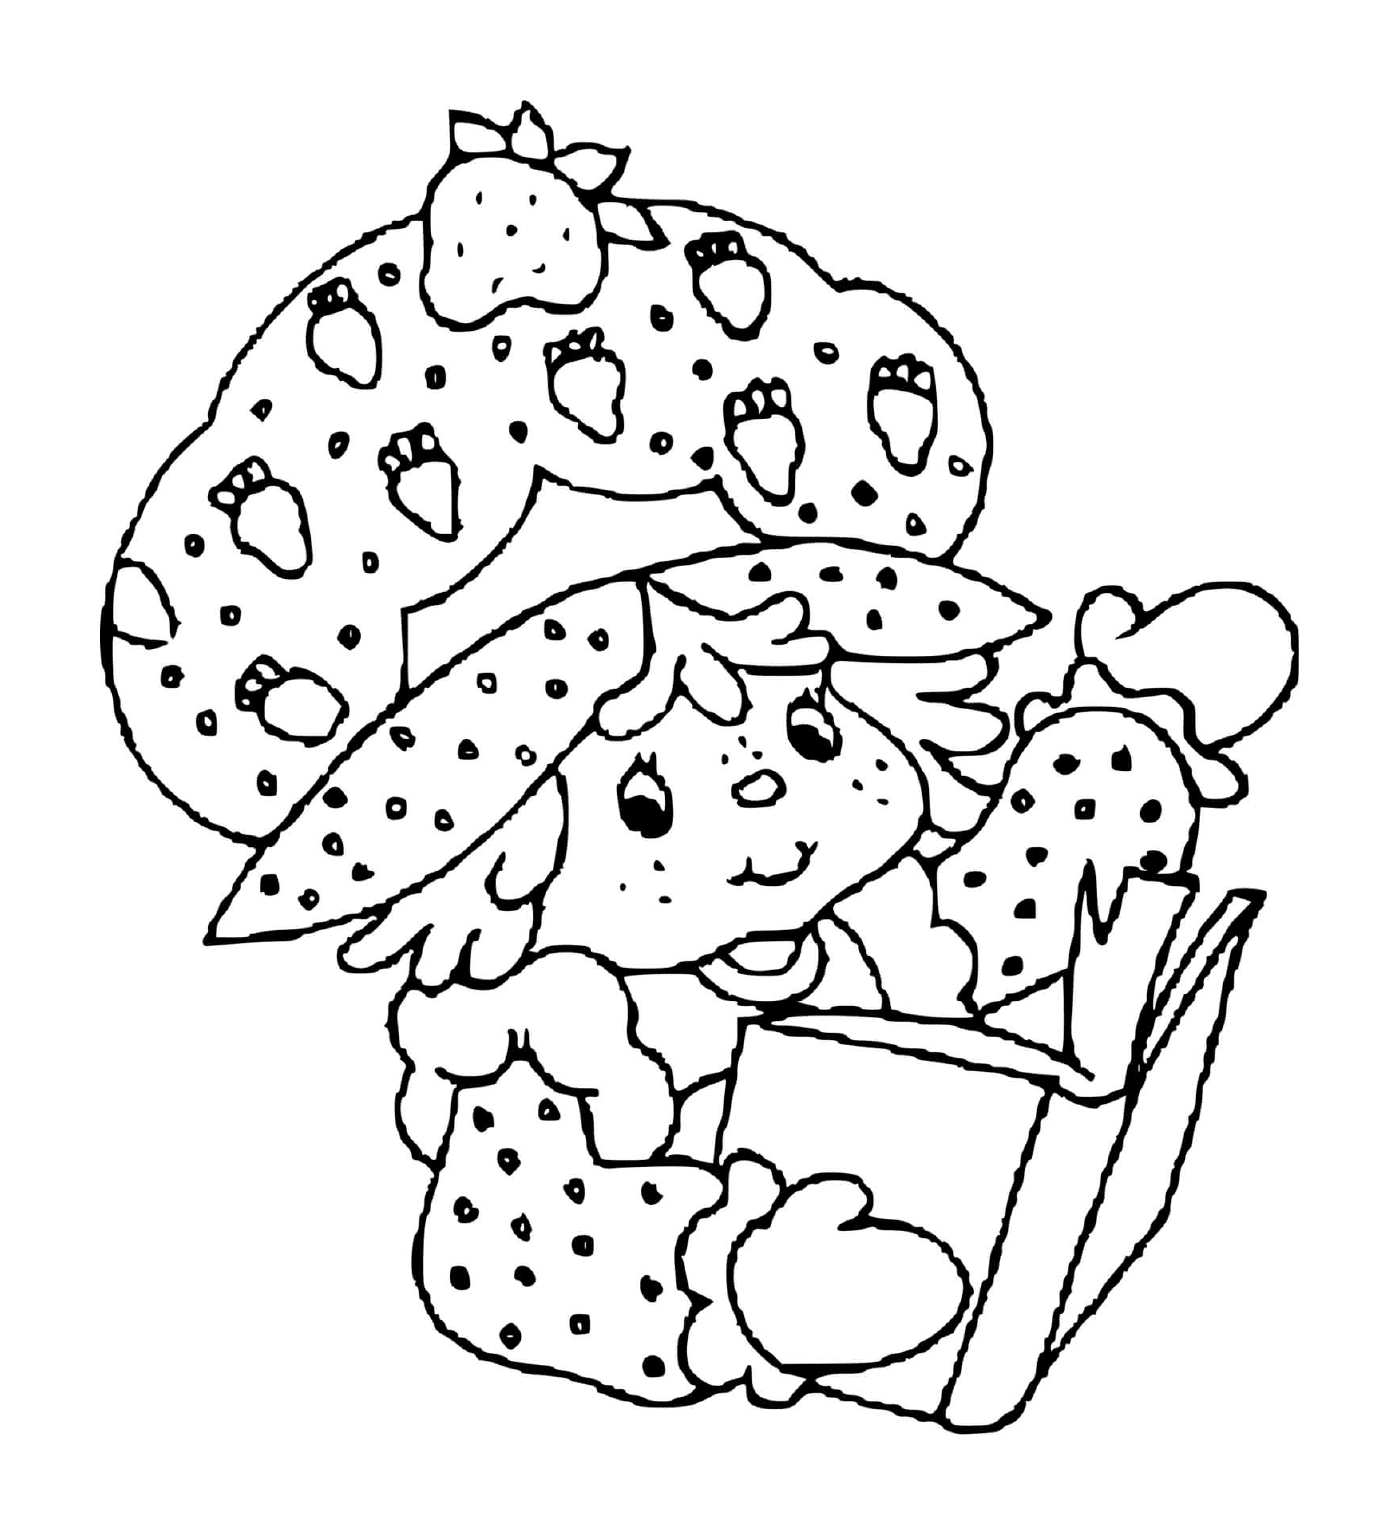  Charlotte com morangos mergulhado em um livro cativante 